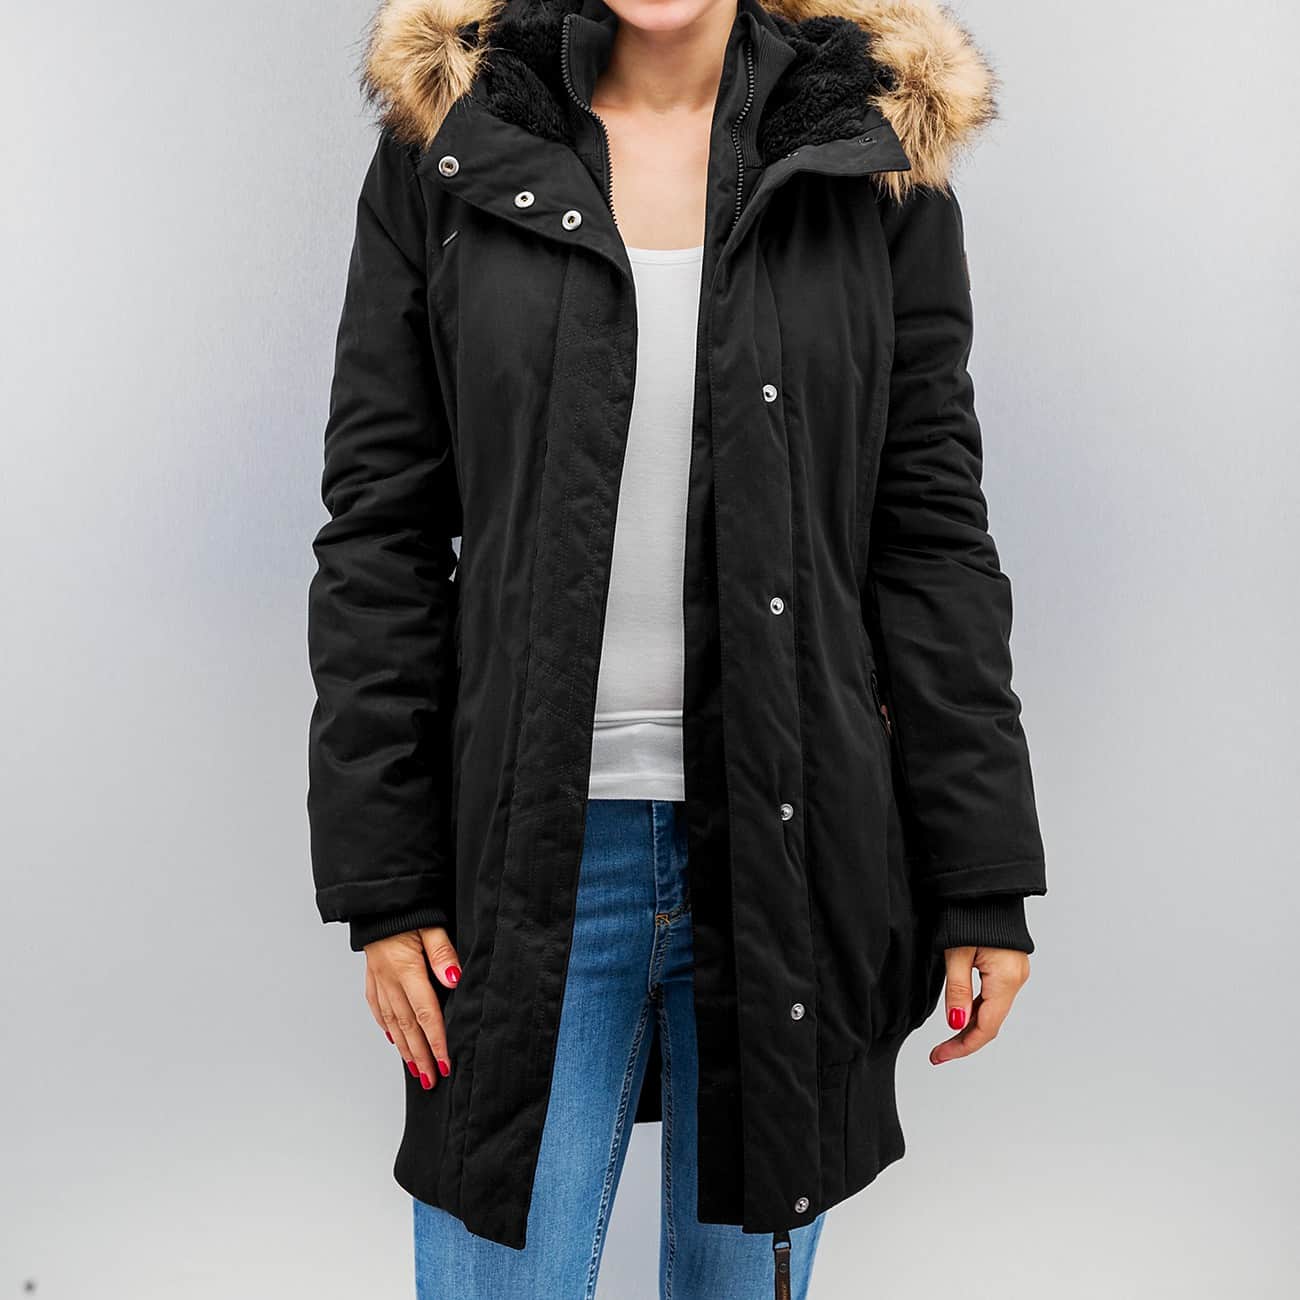 Ragwear Winter Jackets ragwear jacka / winter blemd in black women,ragwear kjolar,rimligt rea pris JULGRTO